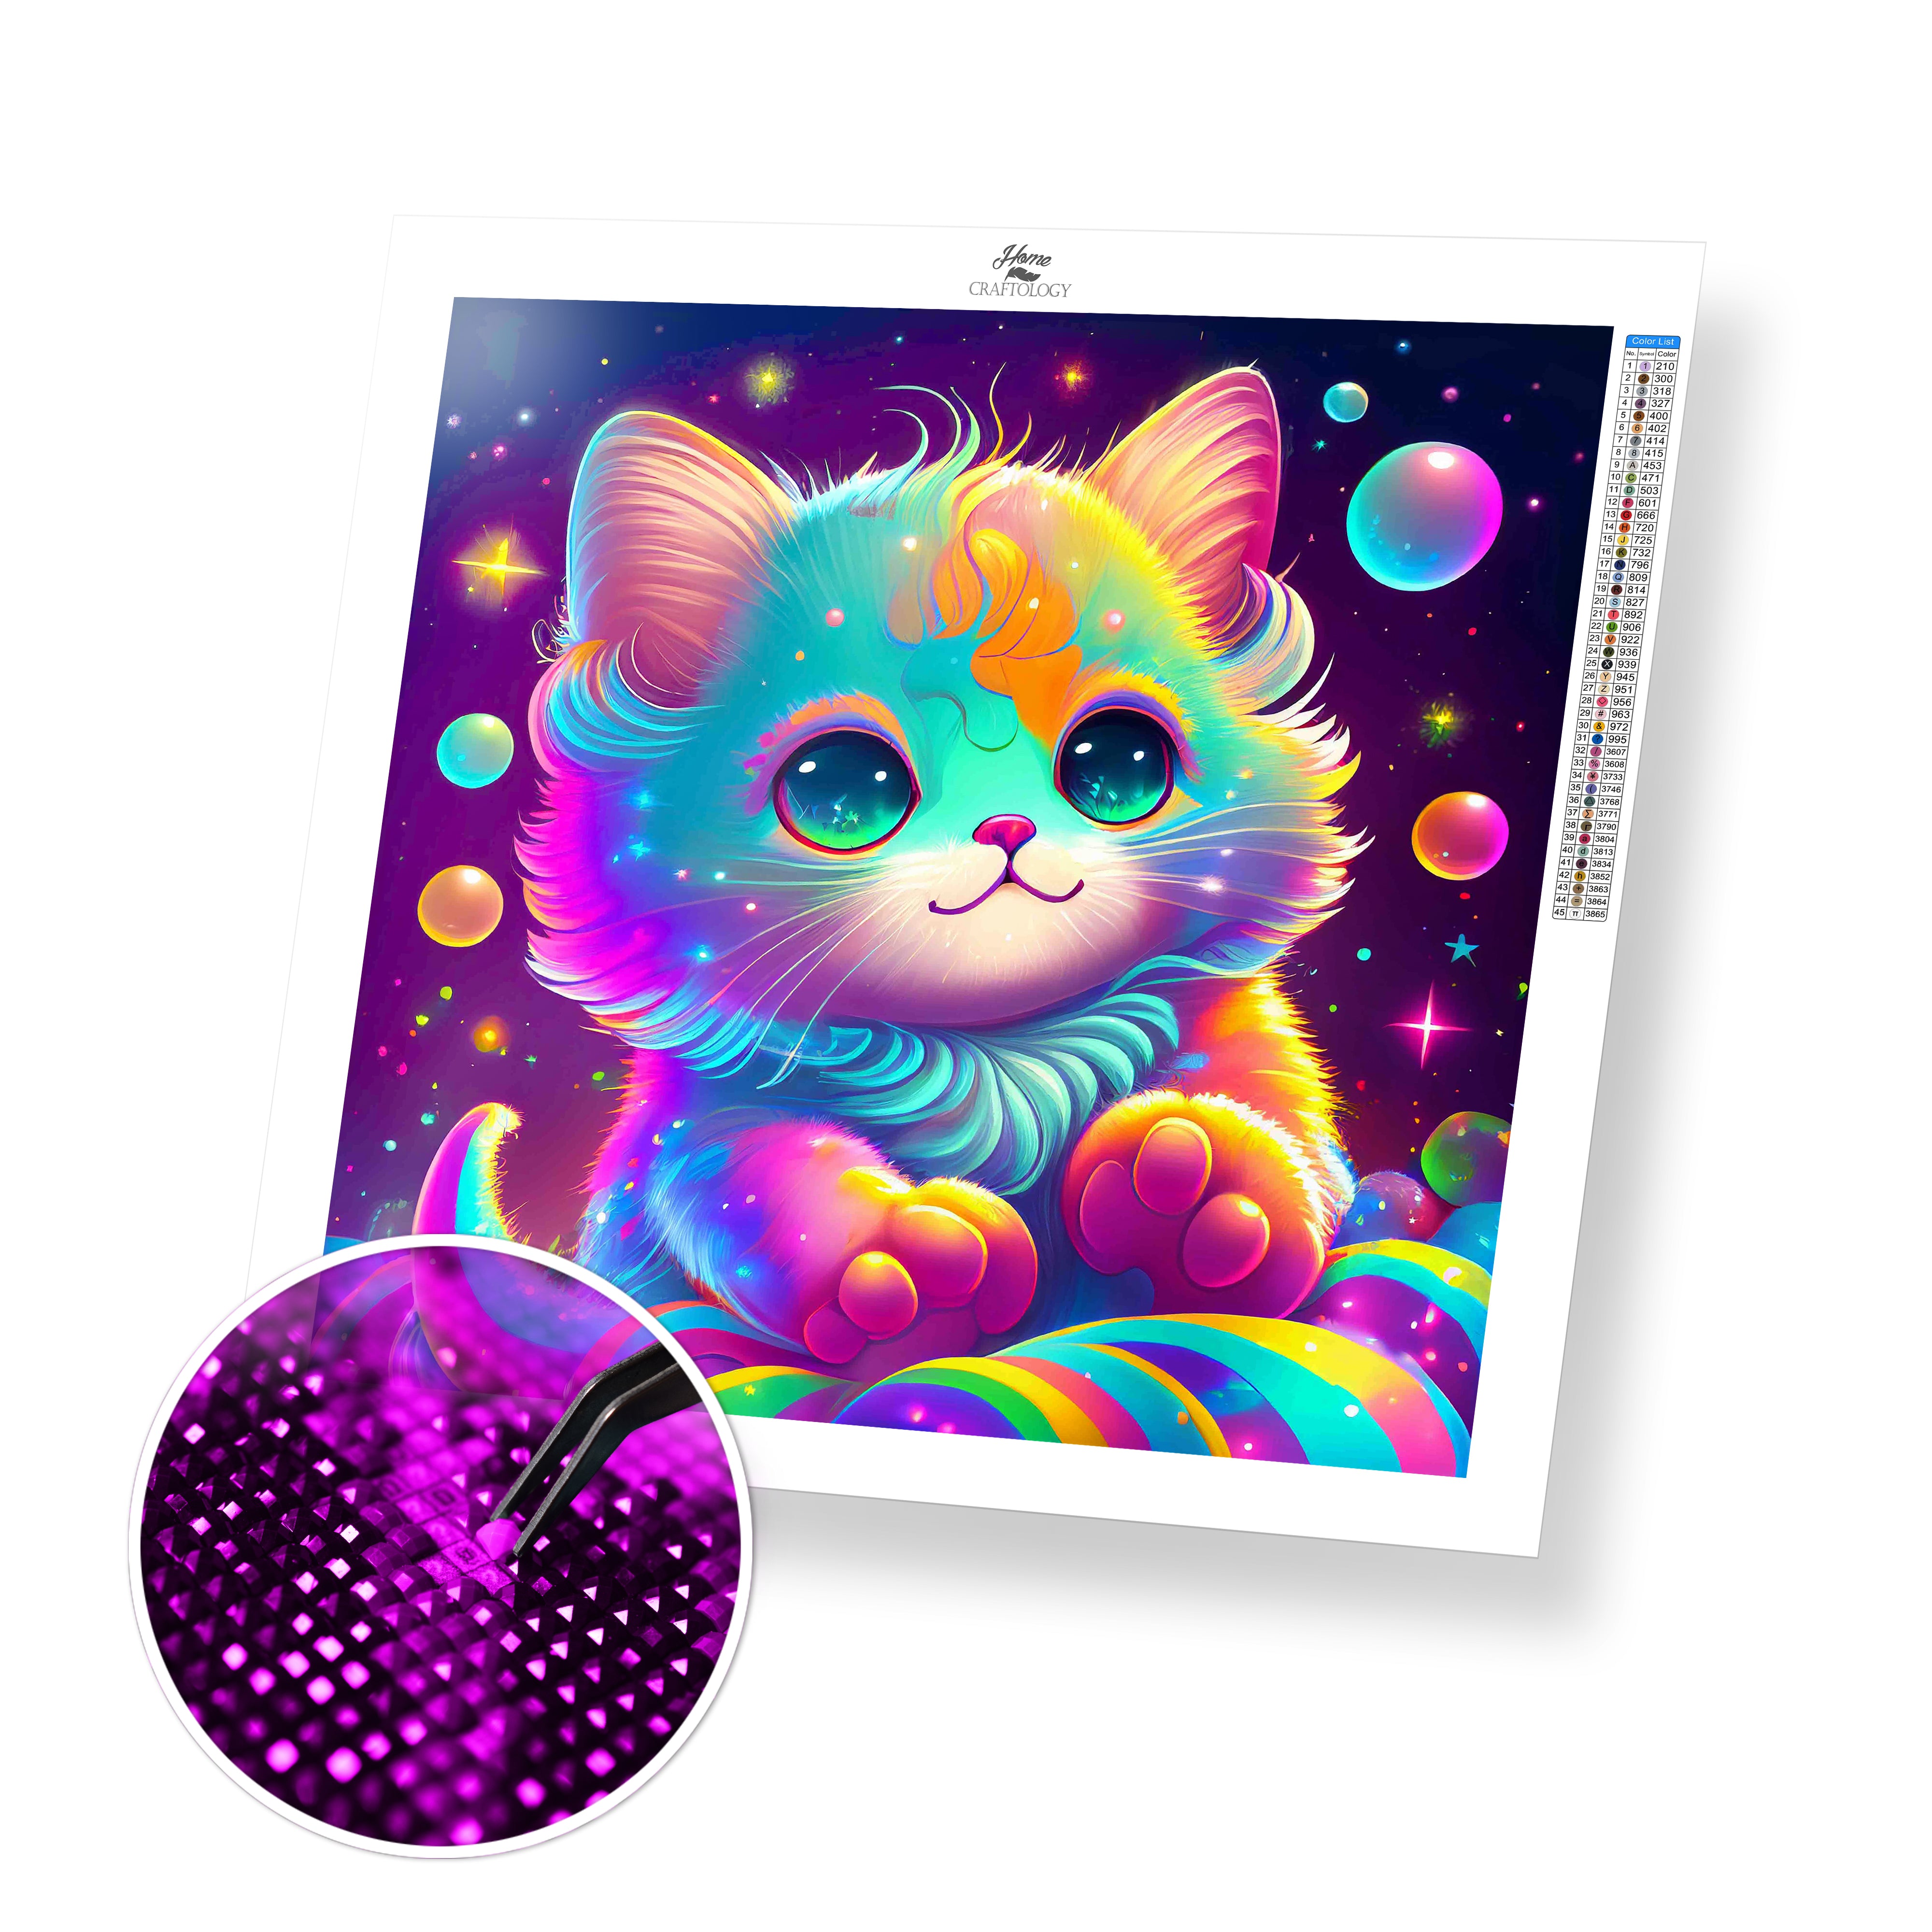 Diamond Painting Rainbow Cat – Diamonds Wizard